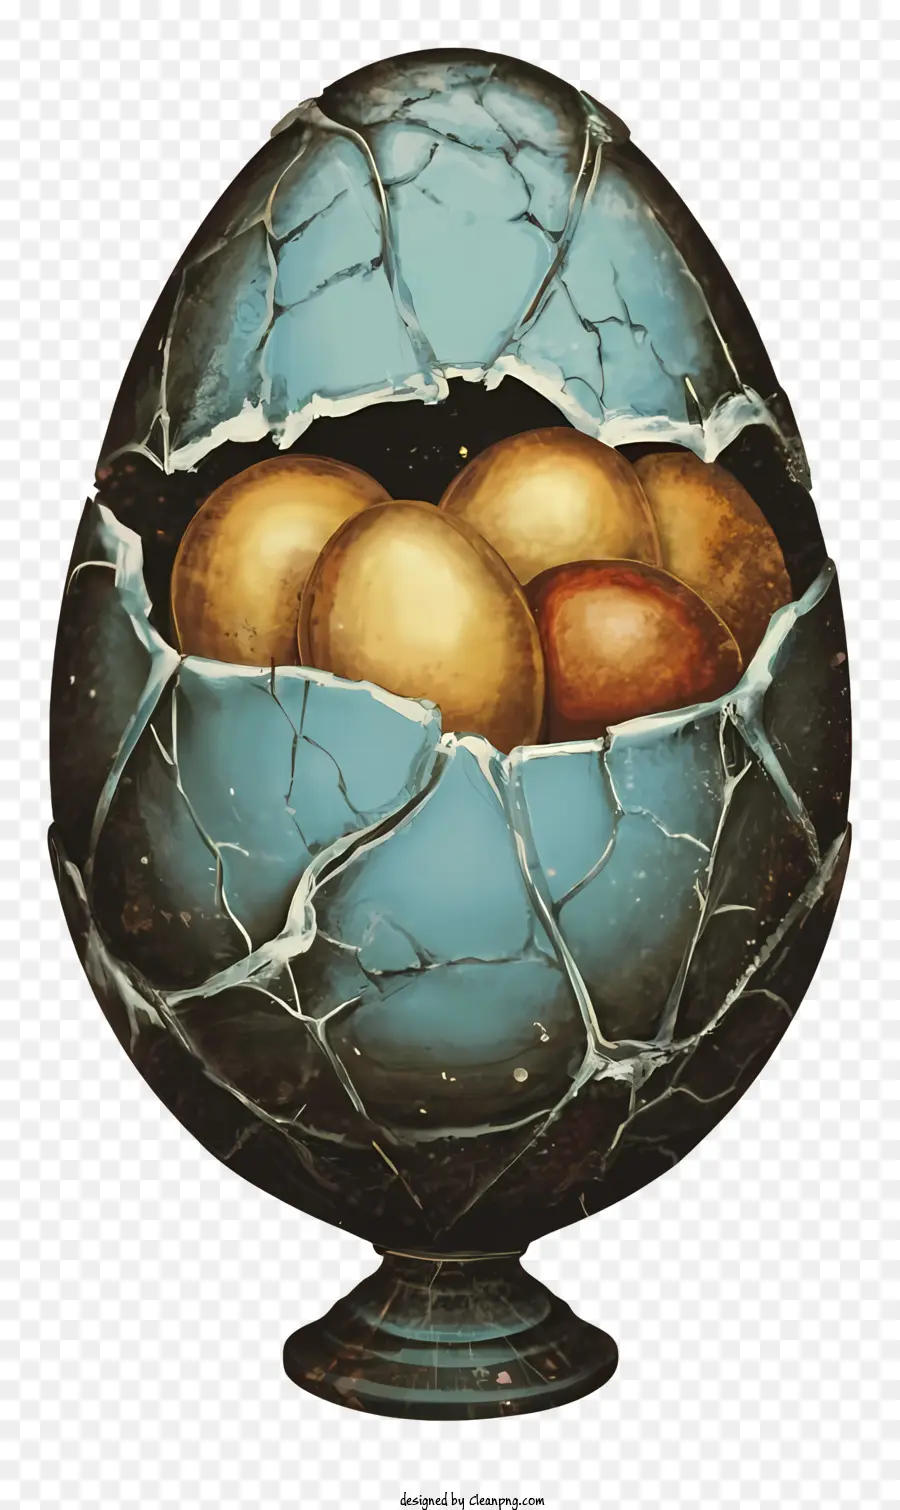 uova rotte spezzate uova uova gialle uova marroni esposti tuorli - Guscio d'uovo rotto con tuorli gialli e marroni